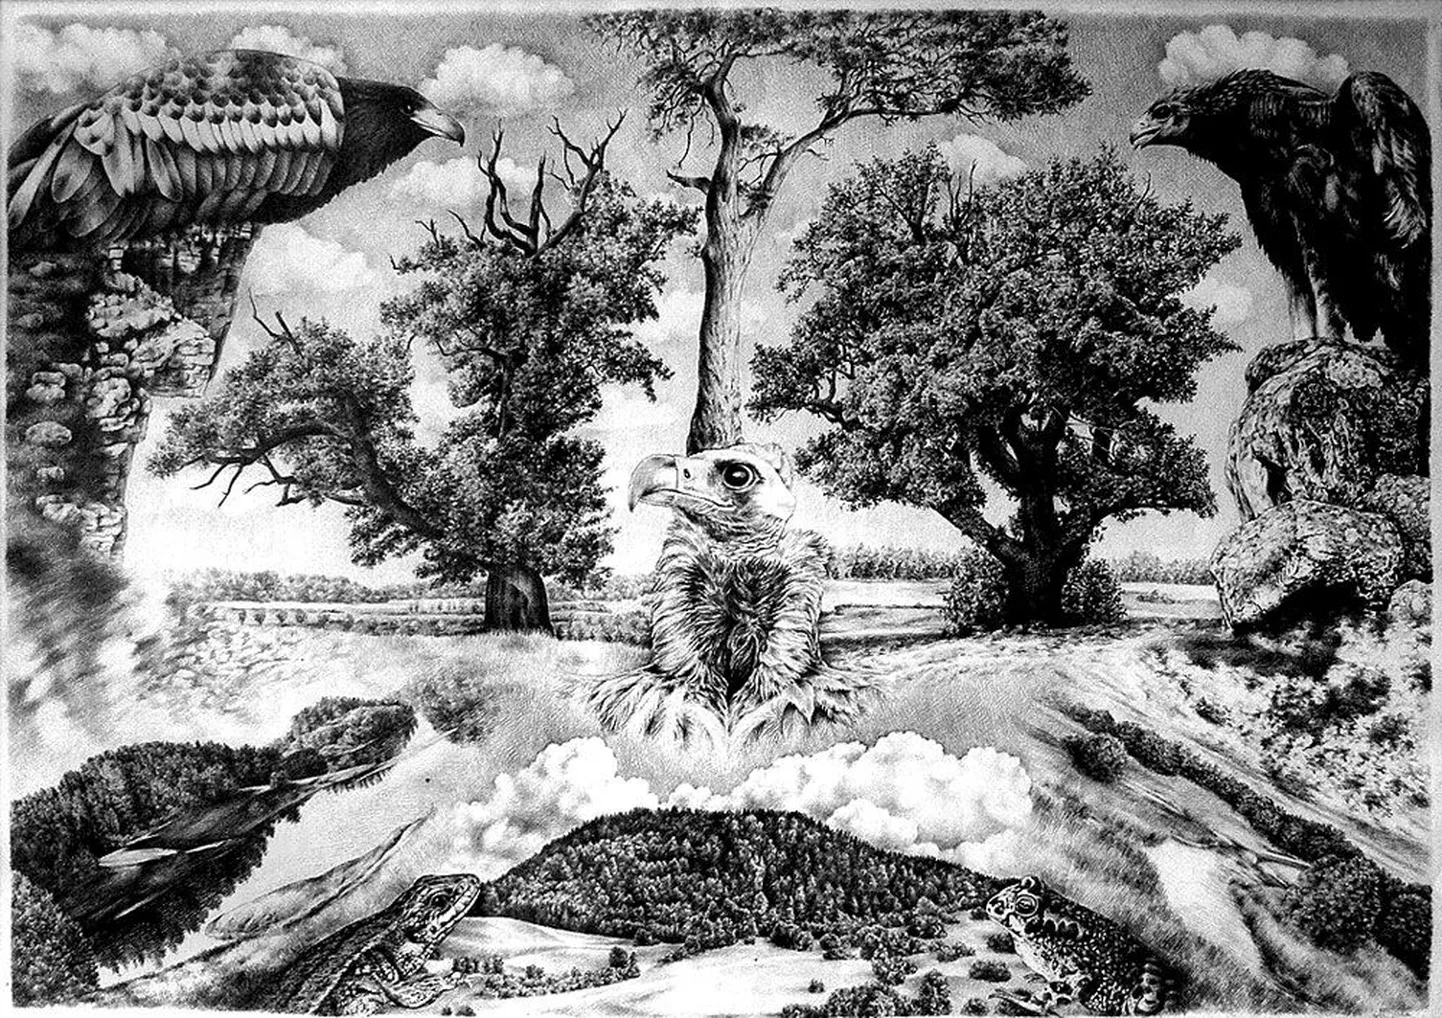 USAs korraldatud kunstikonkursil saavutas Merike Sule-Trubert auhinna joonistuse «Loodus 3» eest. See on valminud aastal 1995 ja kuulub viiejoonistuselisse sarja.